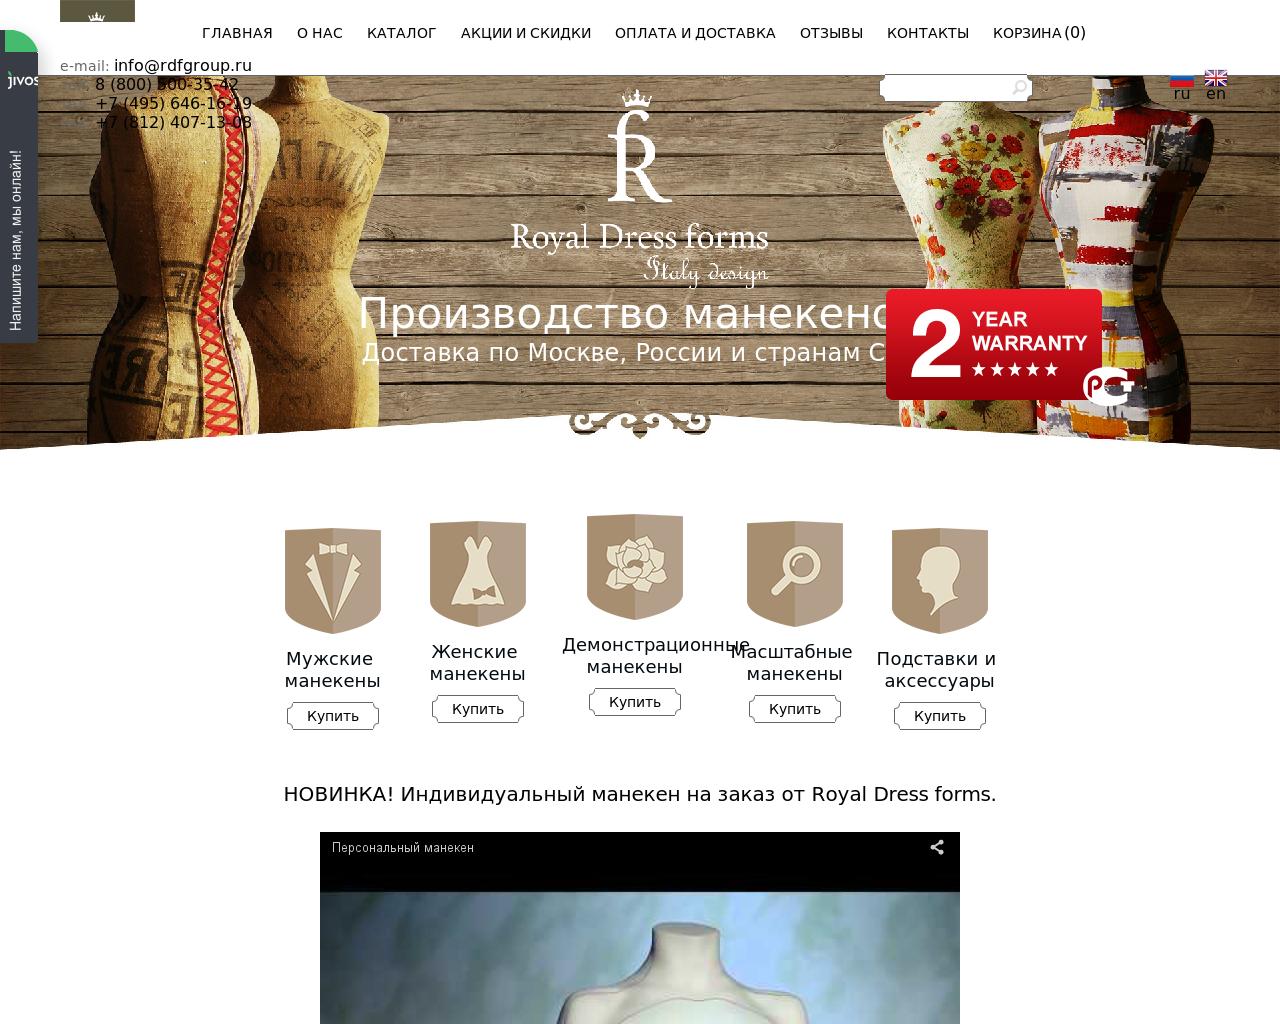 Изображение сайта rdfgroup.ru в разрешении 1280x1024